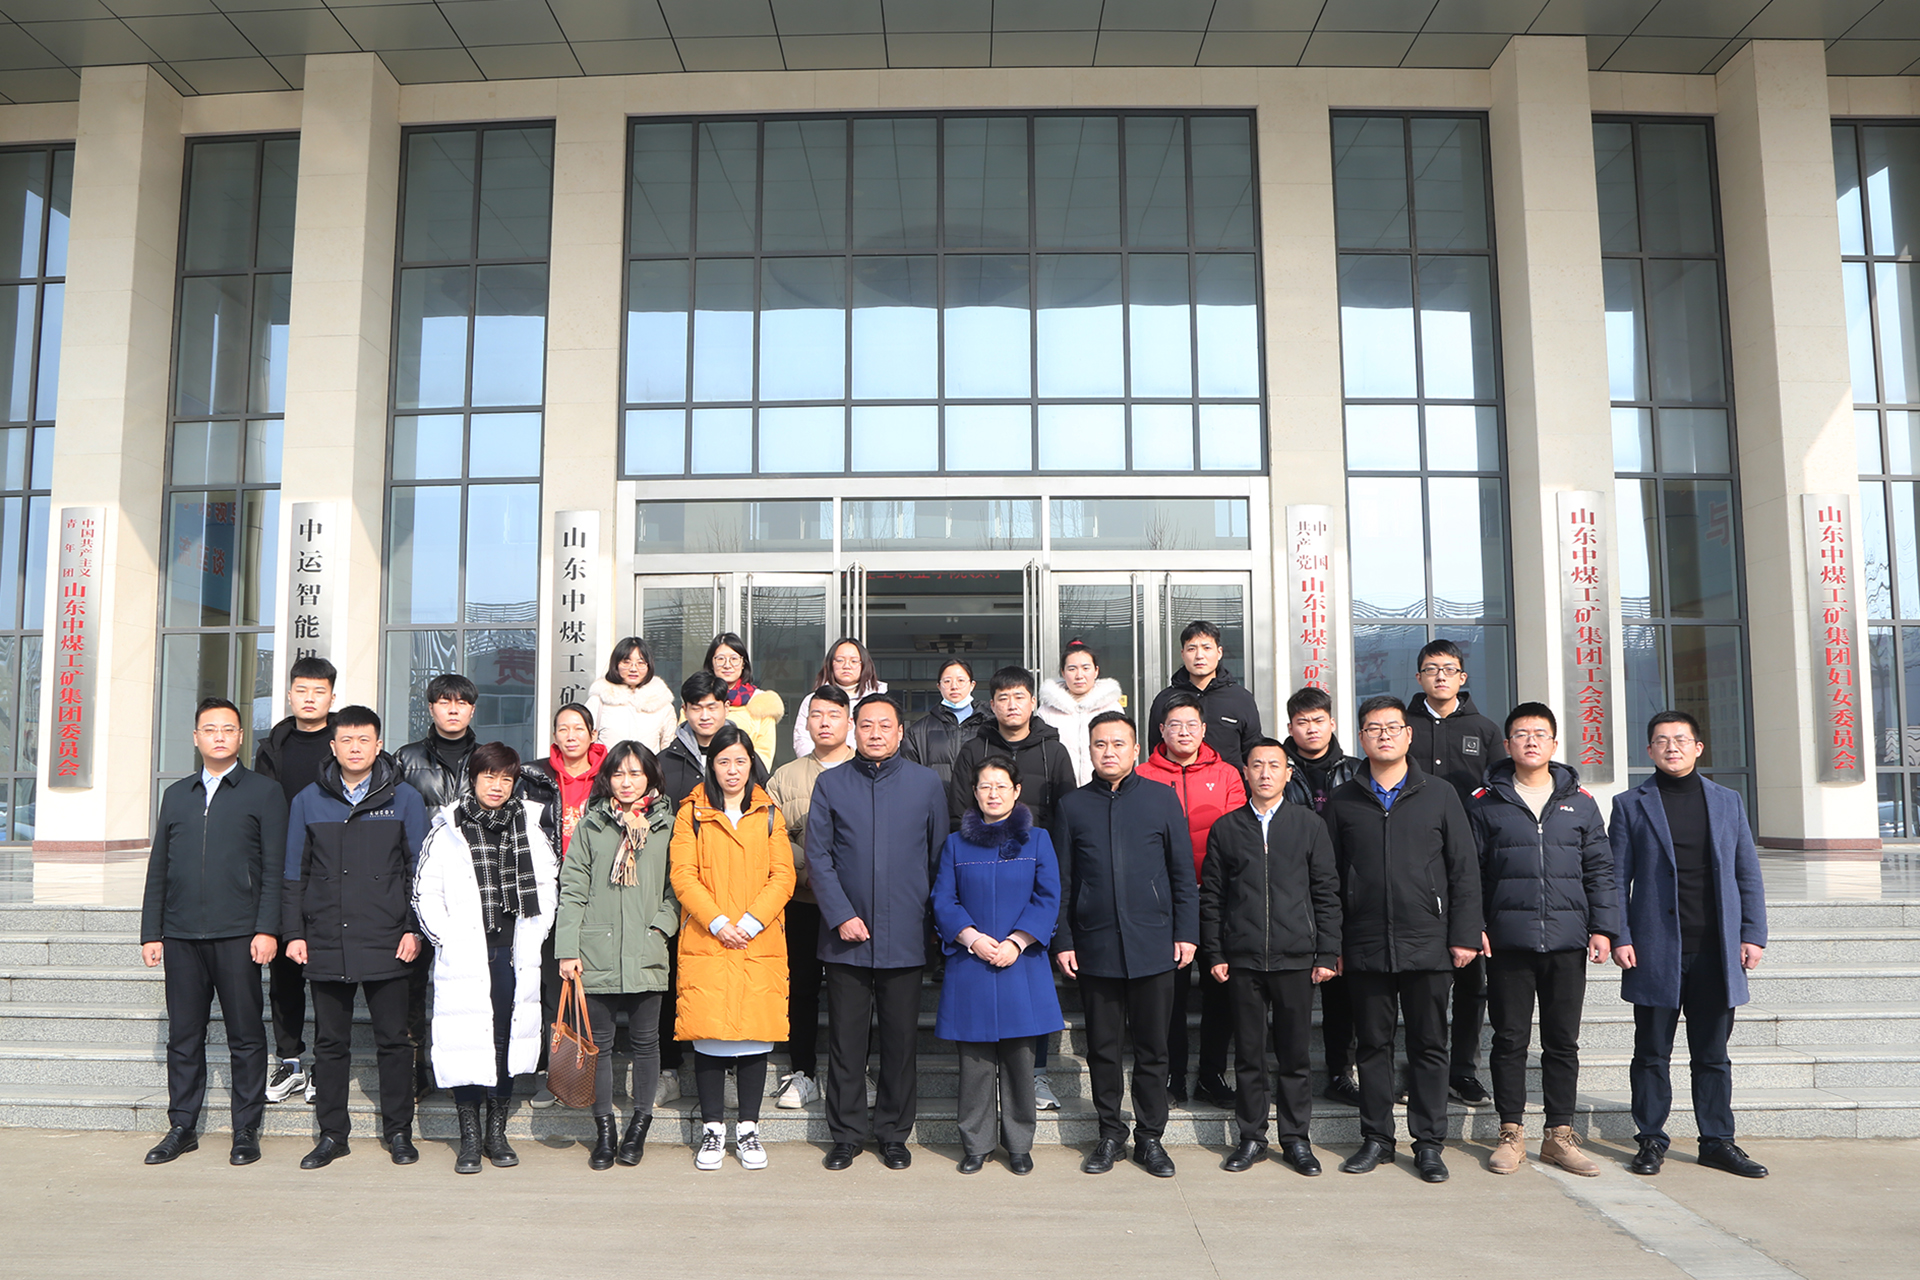 Сердечно приветствуем руководителей Шаньдунского профессионального технологического колледжа, которые посетят China Coal Group